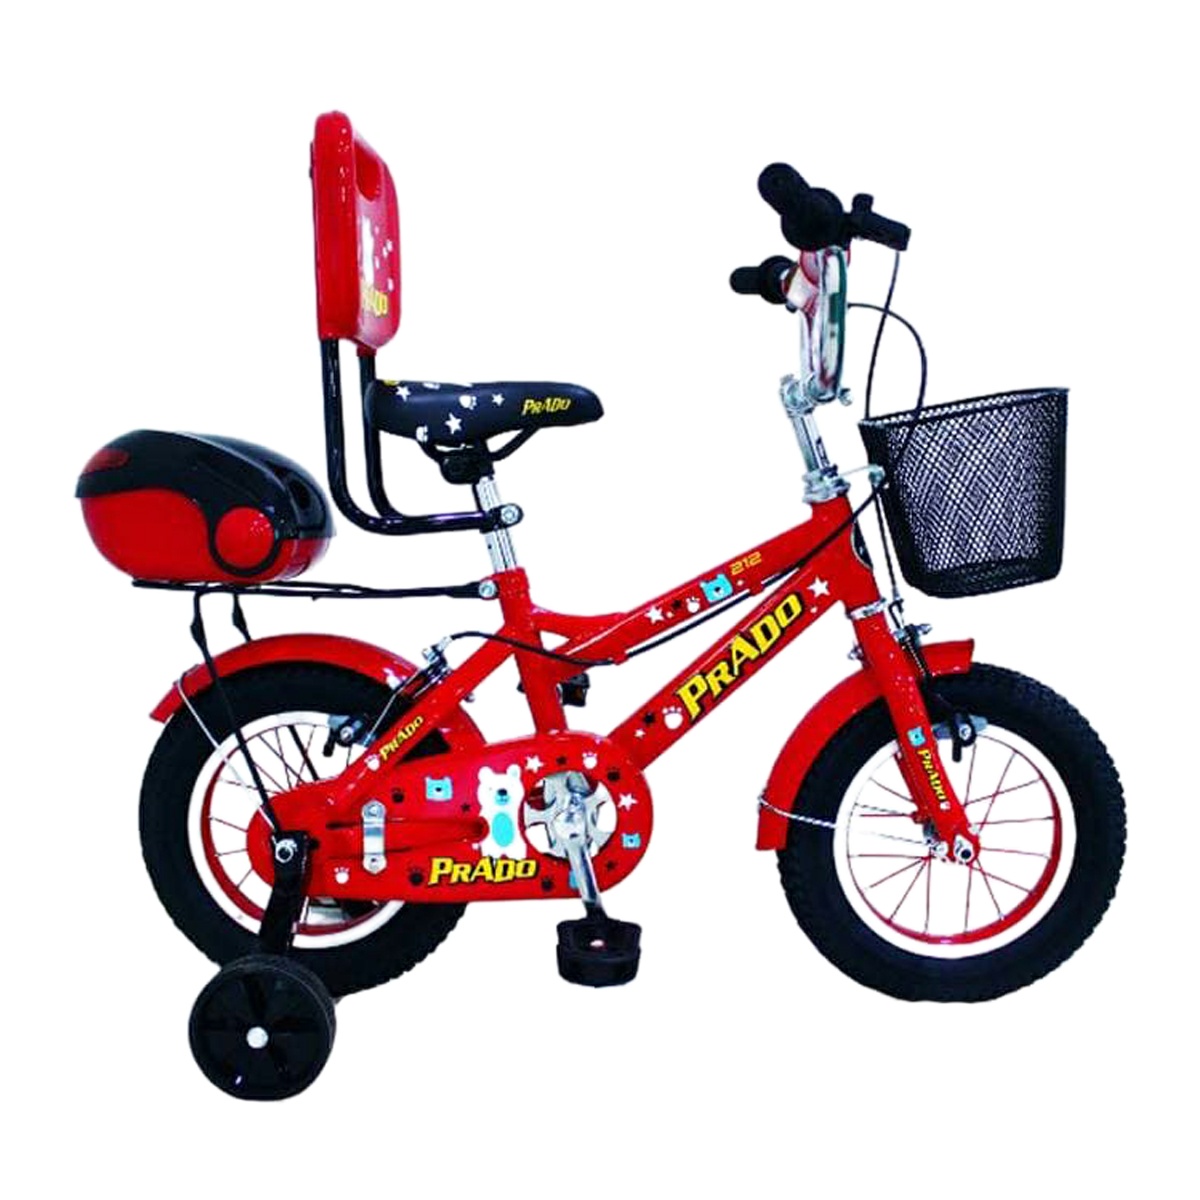 دوچرخه شهری مدل پرادو کد 1200479 سایز 12